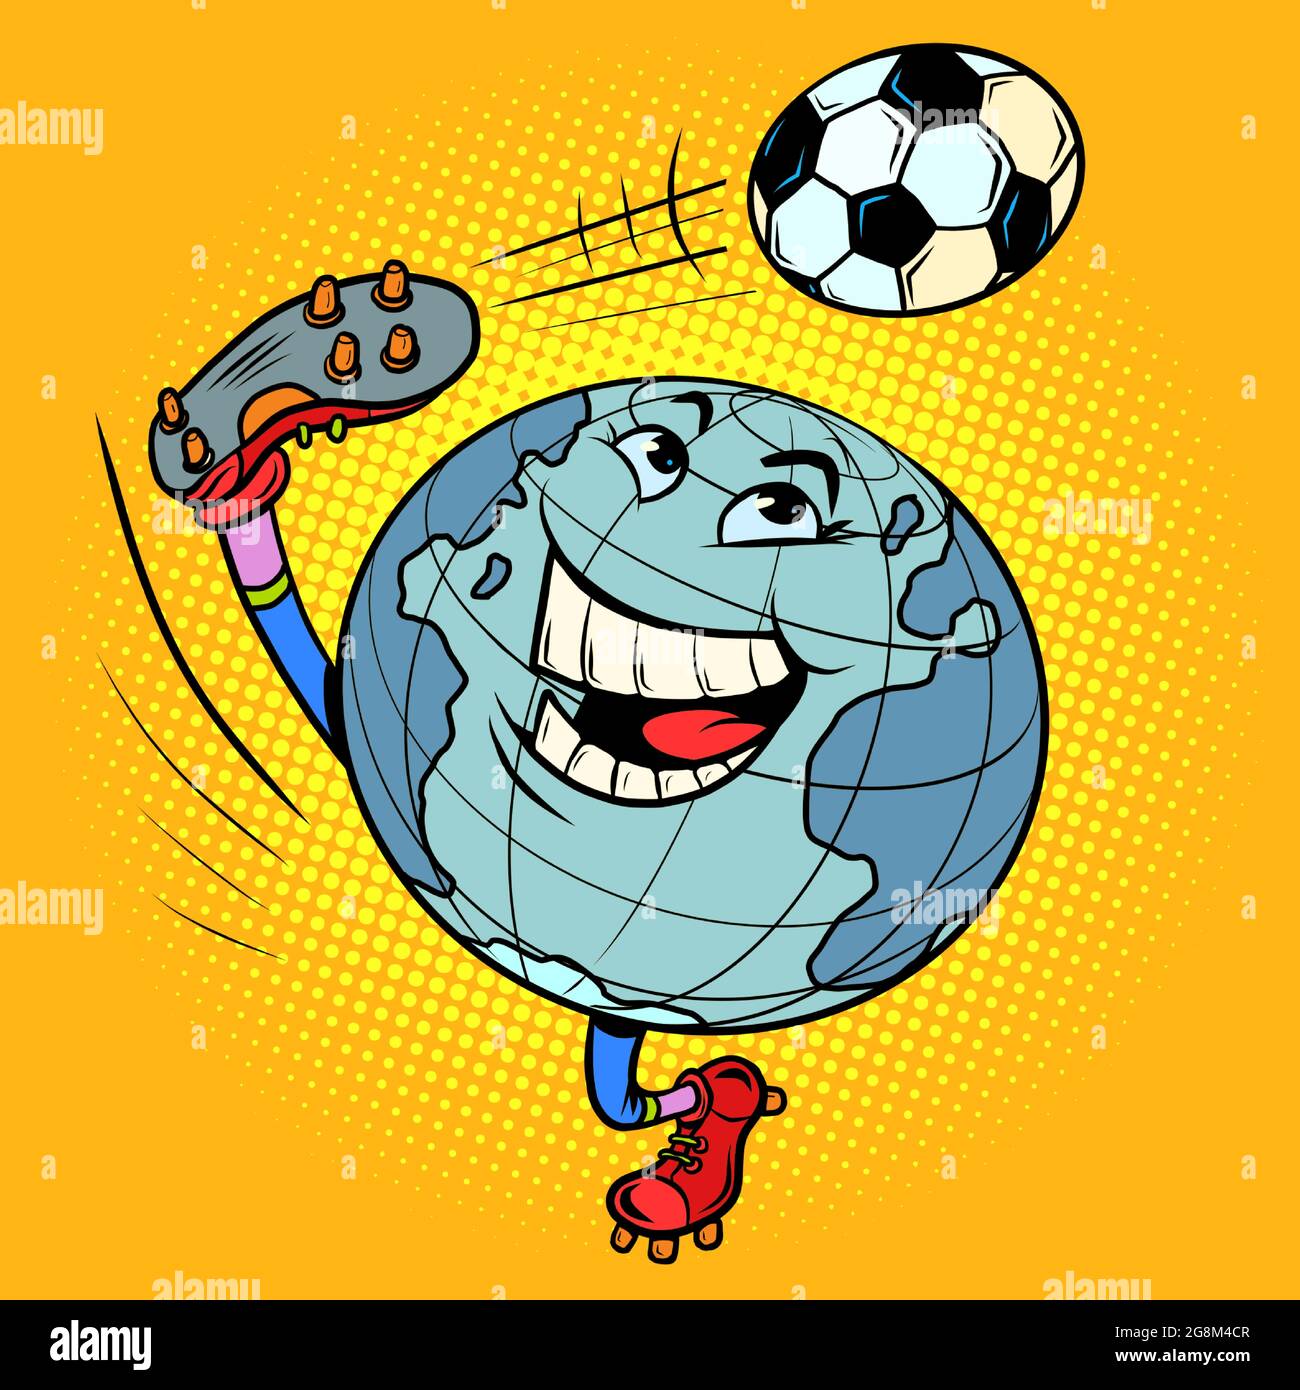 Planet Earth ist ein Charakter wie ein Fußballspieler, der mit einem Ball spielt. Internationale Meisterschaft Stock Vektor